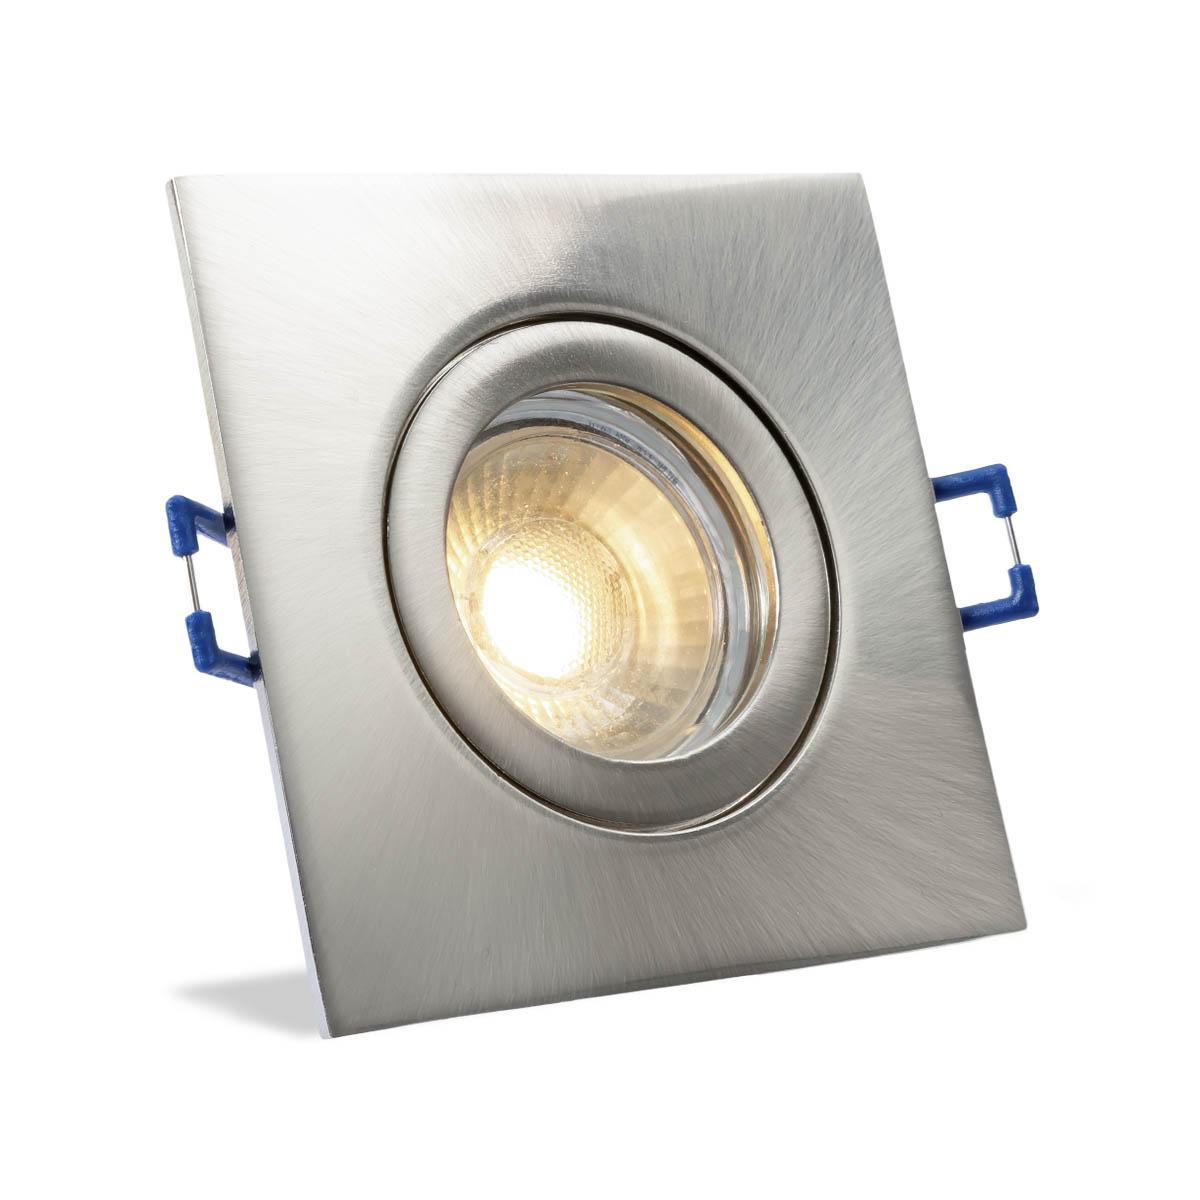 Einbauspot IP44 eckig - Abdeckring:  Edelstahl-gebürstet - LED Leuchtmittel:  GU10 5W neutralweiß